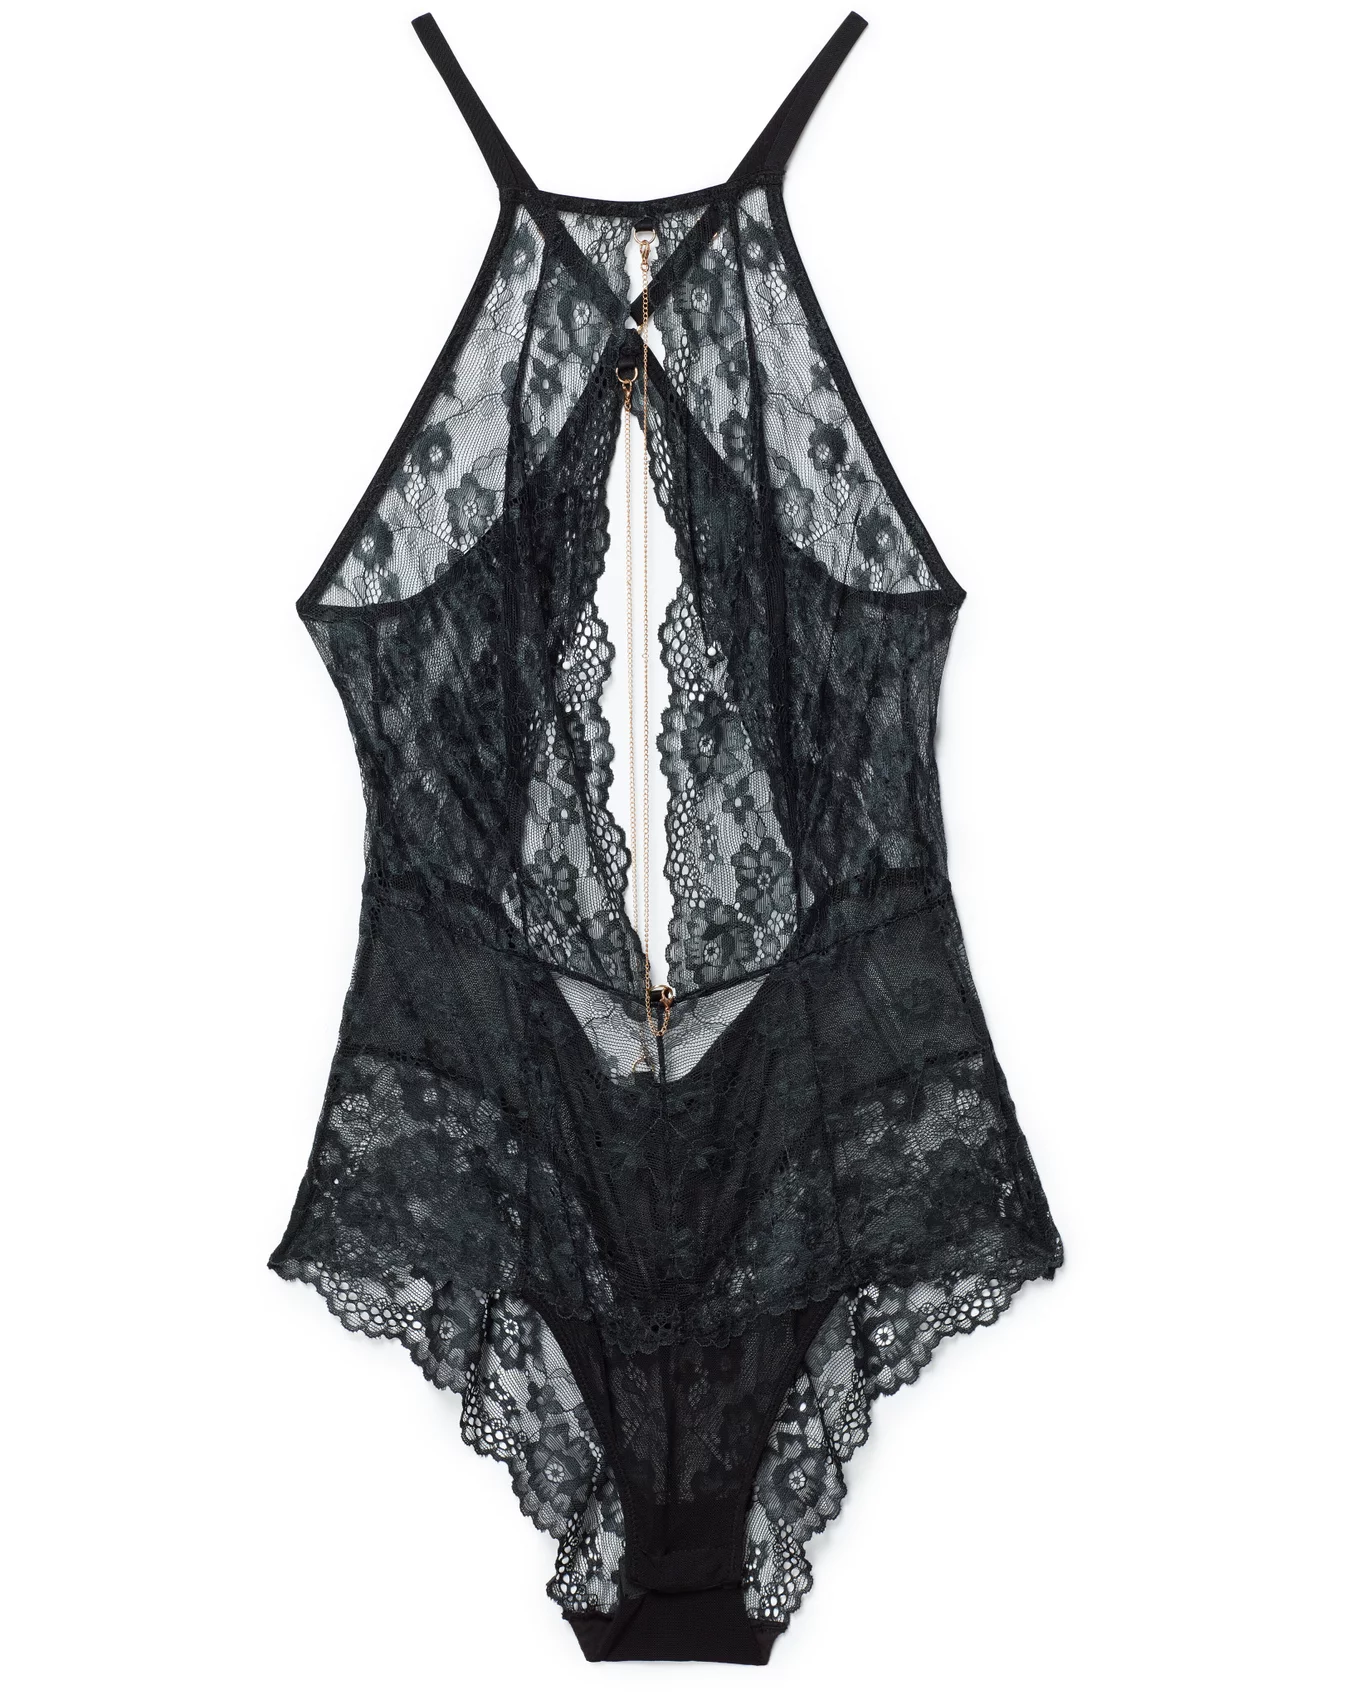 Buy Victoria's Secret Black Lace Up Corset Bodysuit from Next